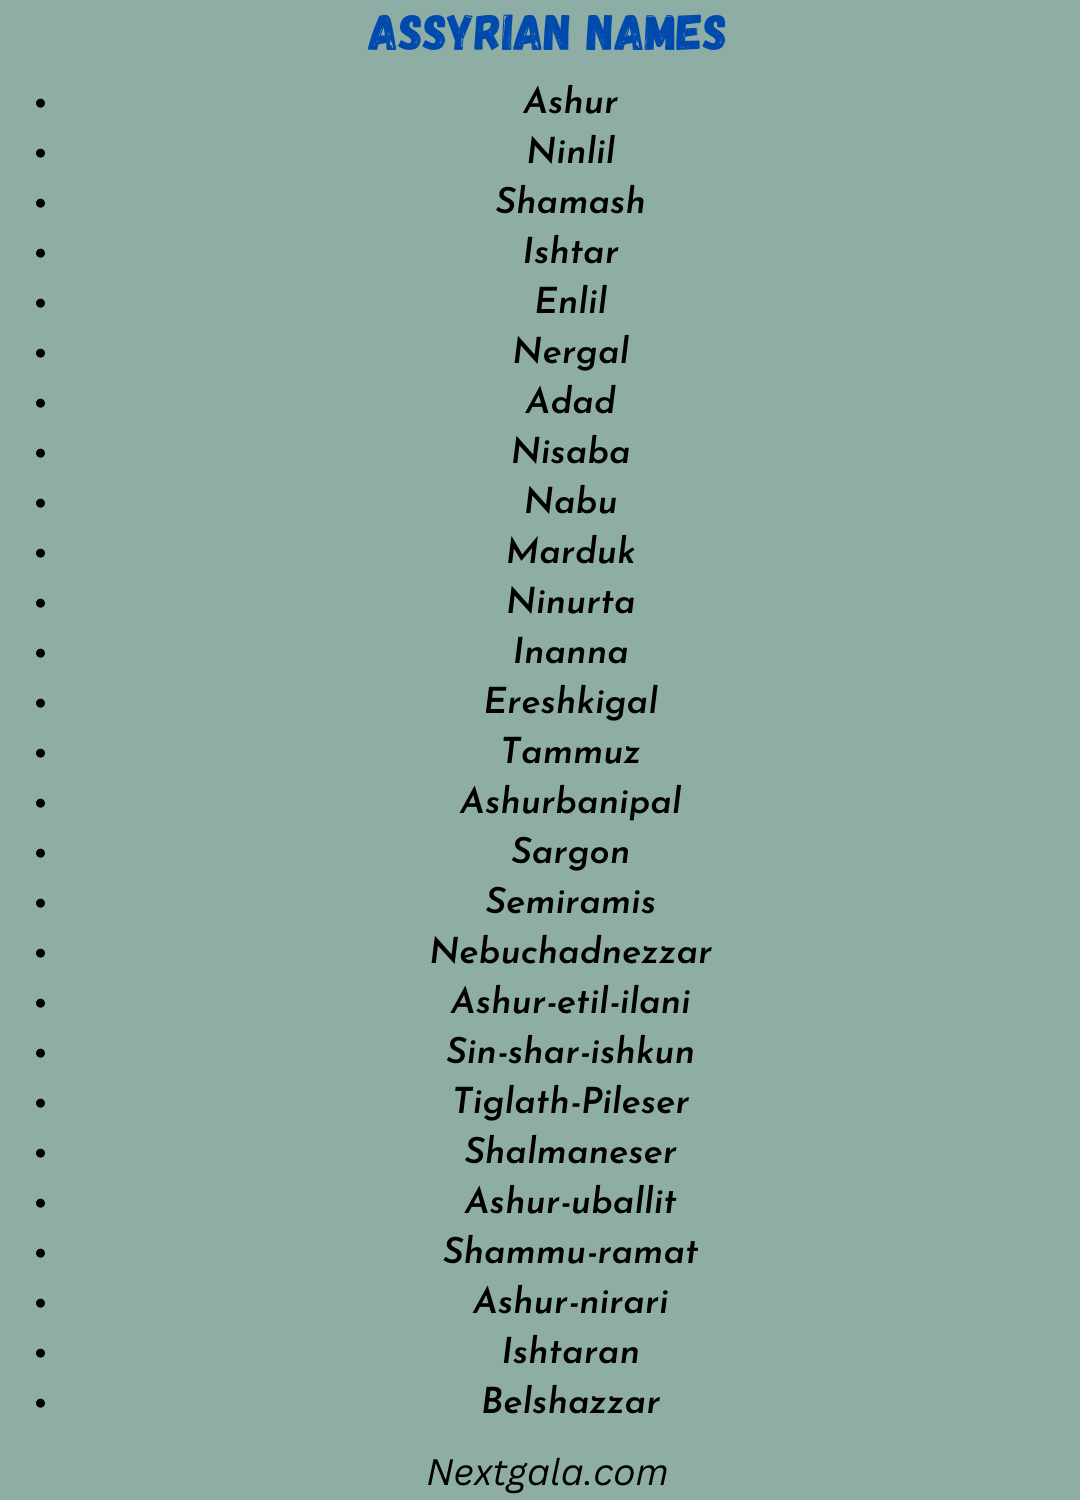 Assyrian Names